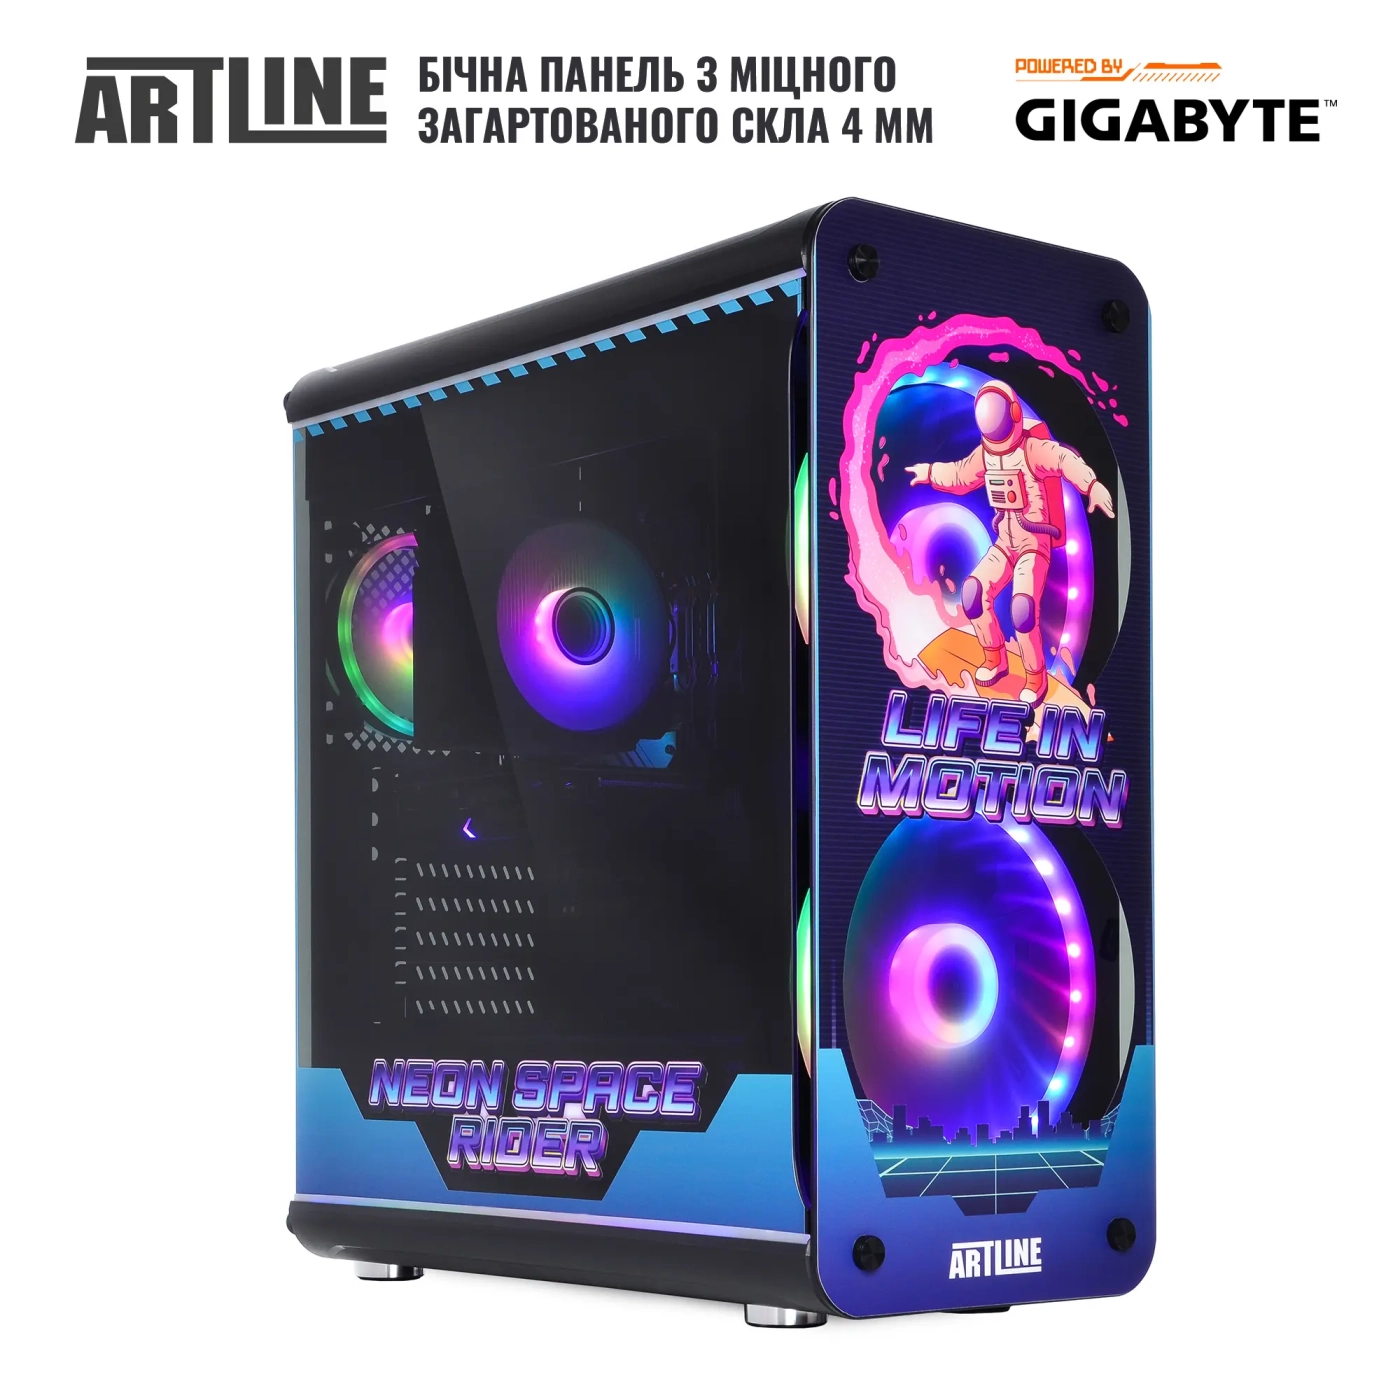 Купить Компьютер ARTLINE Overlord NEONv80 Gigabyte Edition - фото 8